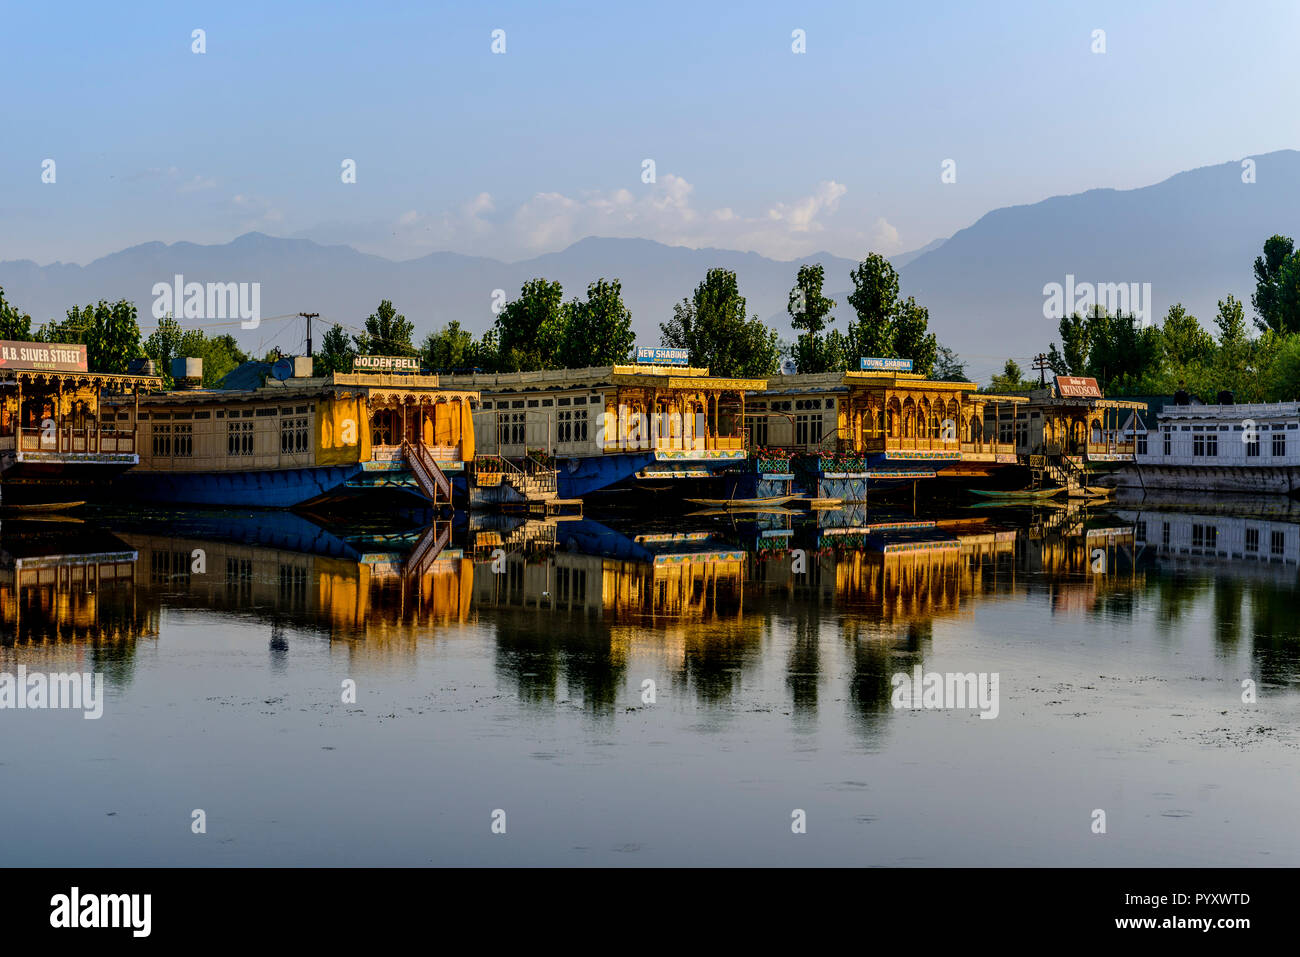 Case galleggianti per l'affitto, ancorato a dal lago e il mirroring in acqua, sono la principale attrazione per i turisti che visitano il Kashmir Foto Stock